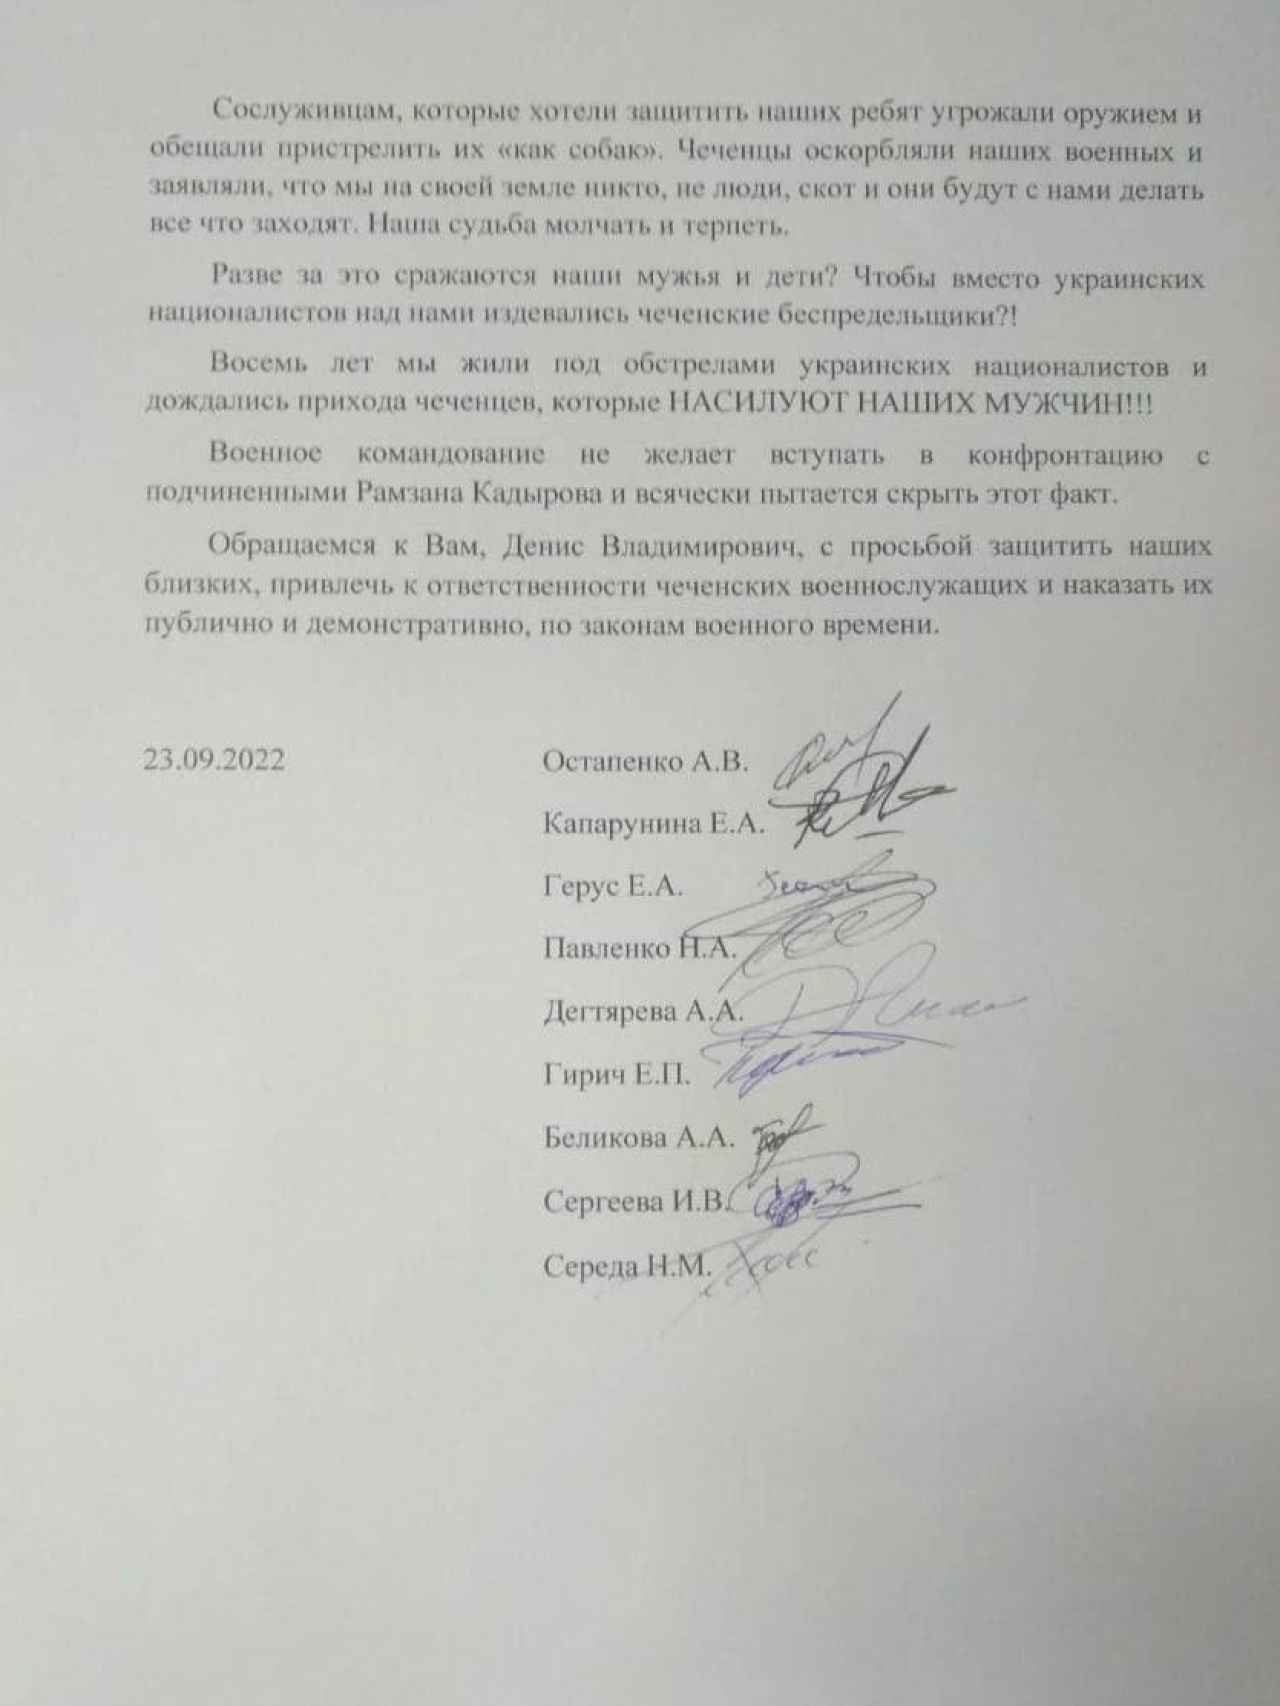 Familiares de varios hombres del Donetsk movilizados por Rusia denunciaron que dos de ellos fueron agredidos sexualmente por chechenos. El documento fue dado a conocer por el activista Abubakar Yangulbaev.